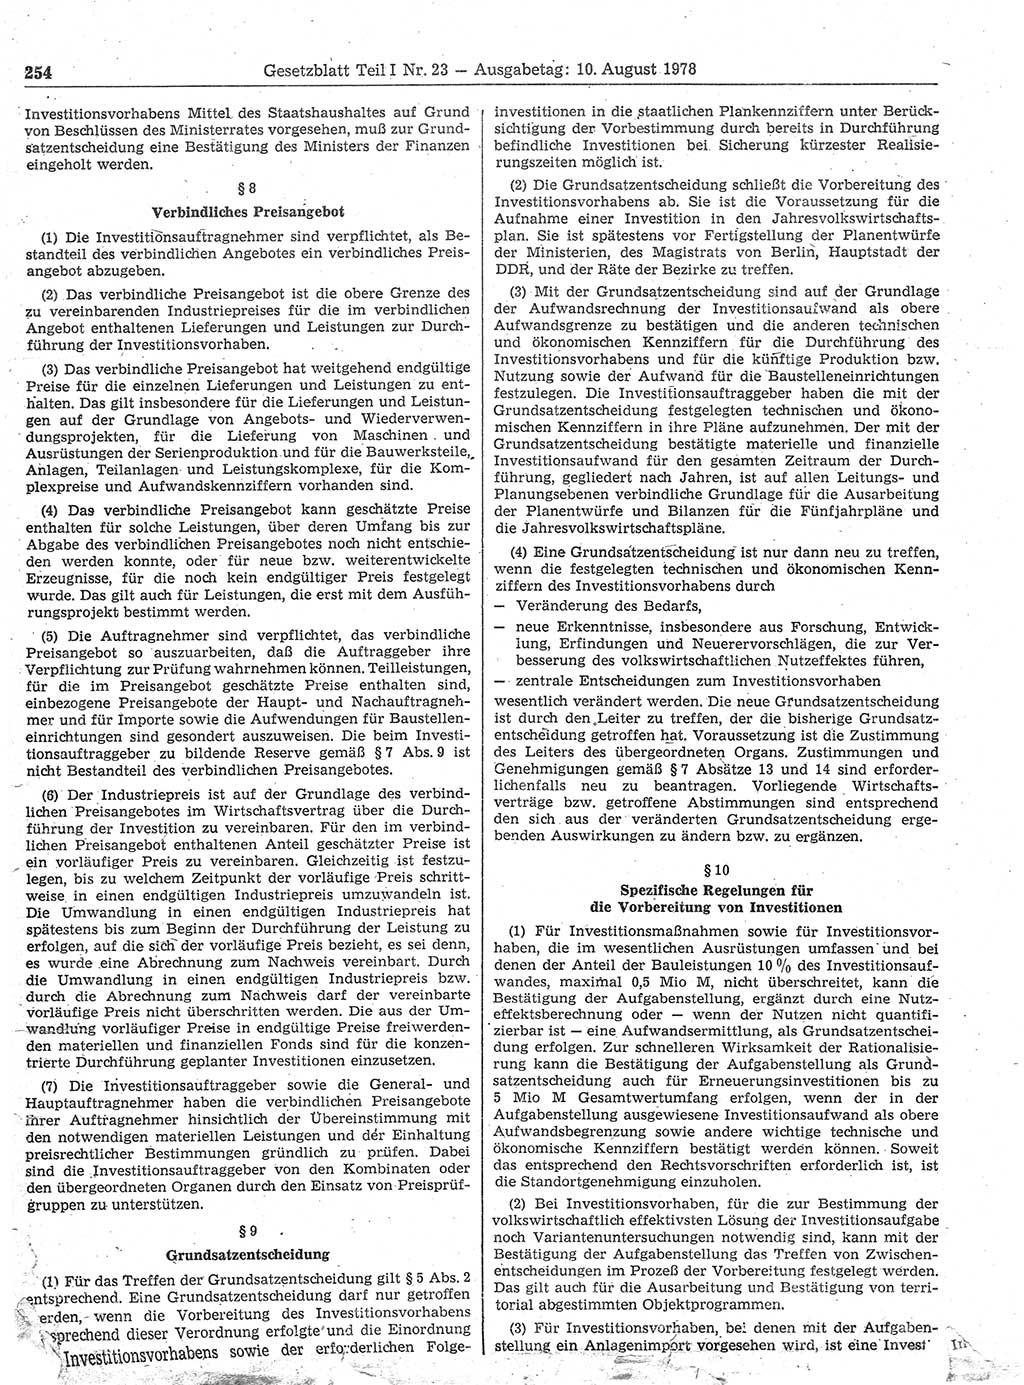 Gesetzblatt (GBl.) der Deutschen Demokratischen Republik (DDR) Teil Ⅰ 1978, Seite 254 (GBl. DDR Ⅰ 1978, S. 254)